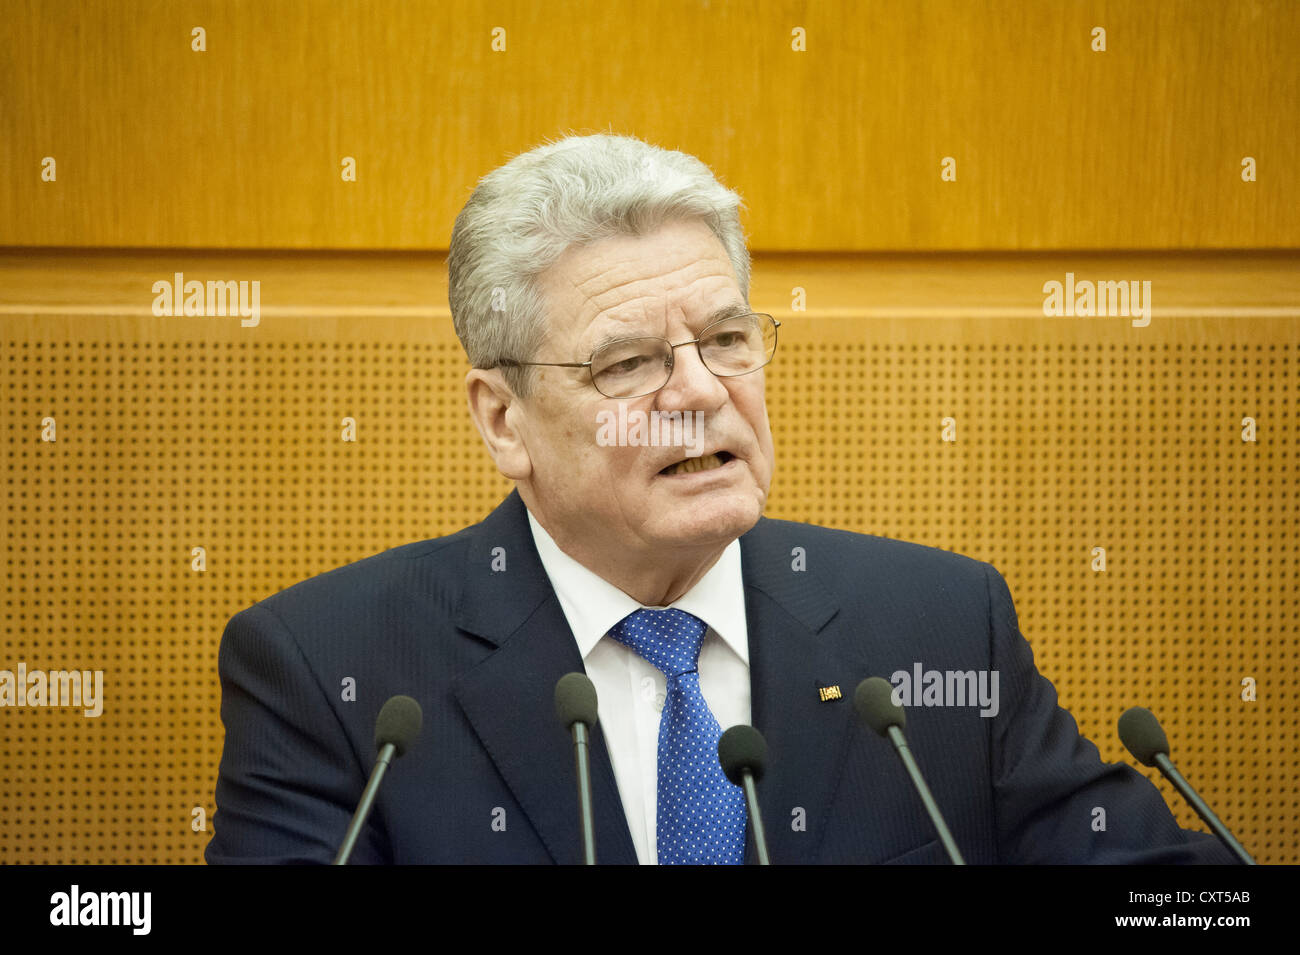 Il Presidente federale Joachim Gauck rivolgendosi ai deputati del Landtag, membro del Parlamento europeo, visita inaugurale del presidente federale Foto Stock